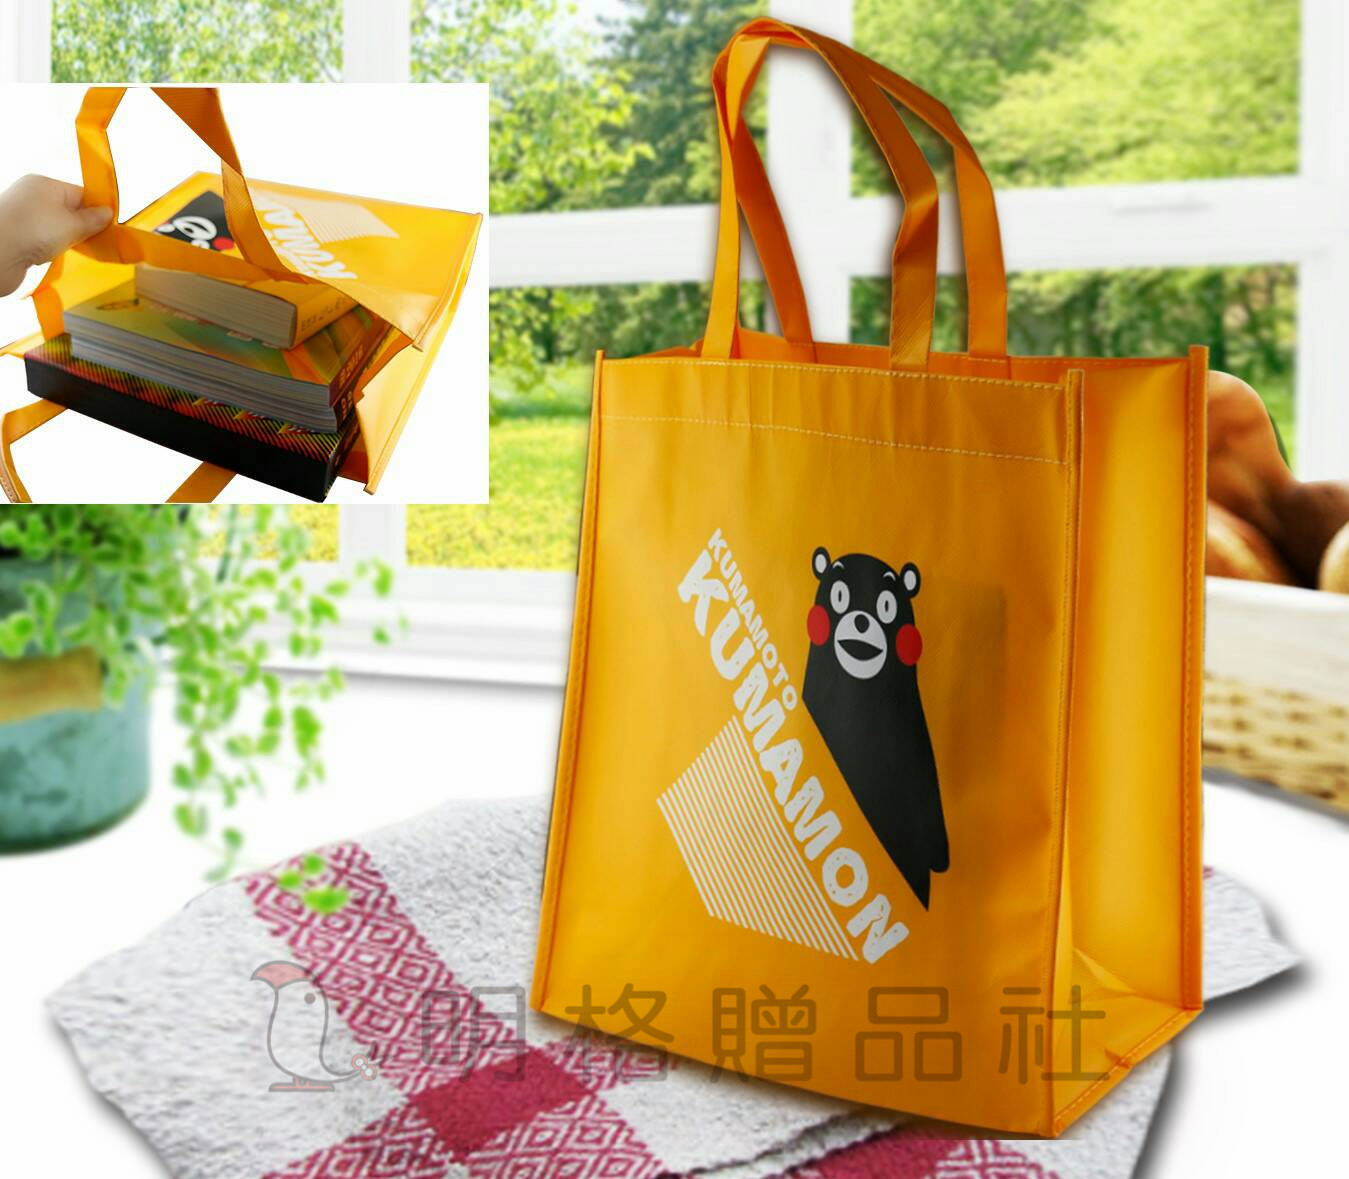 熊本熊購物袋 熊本熊系列 熊本熊 日本 A4大小可放書 堅固耐用 明格贈品社